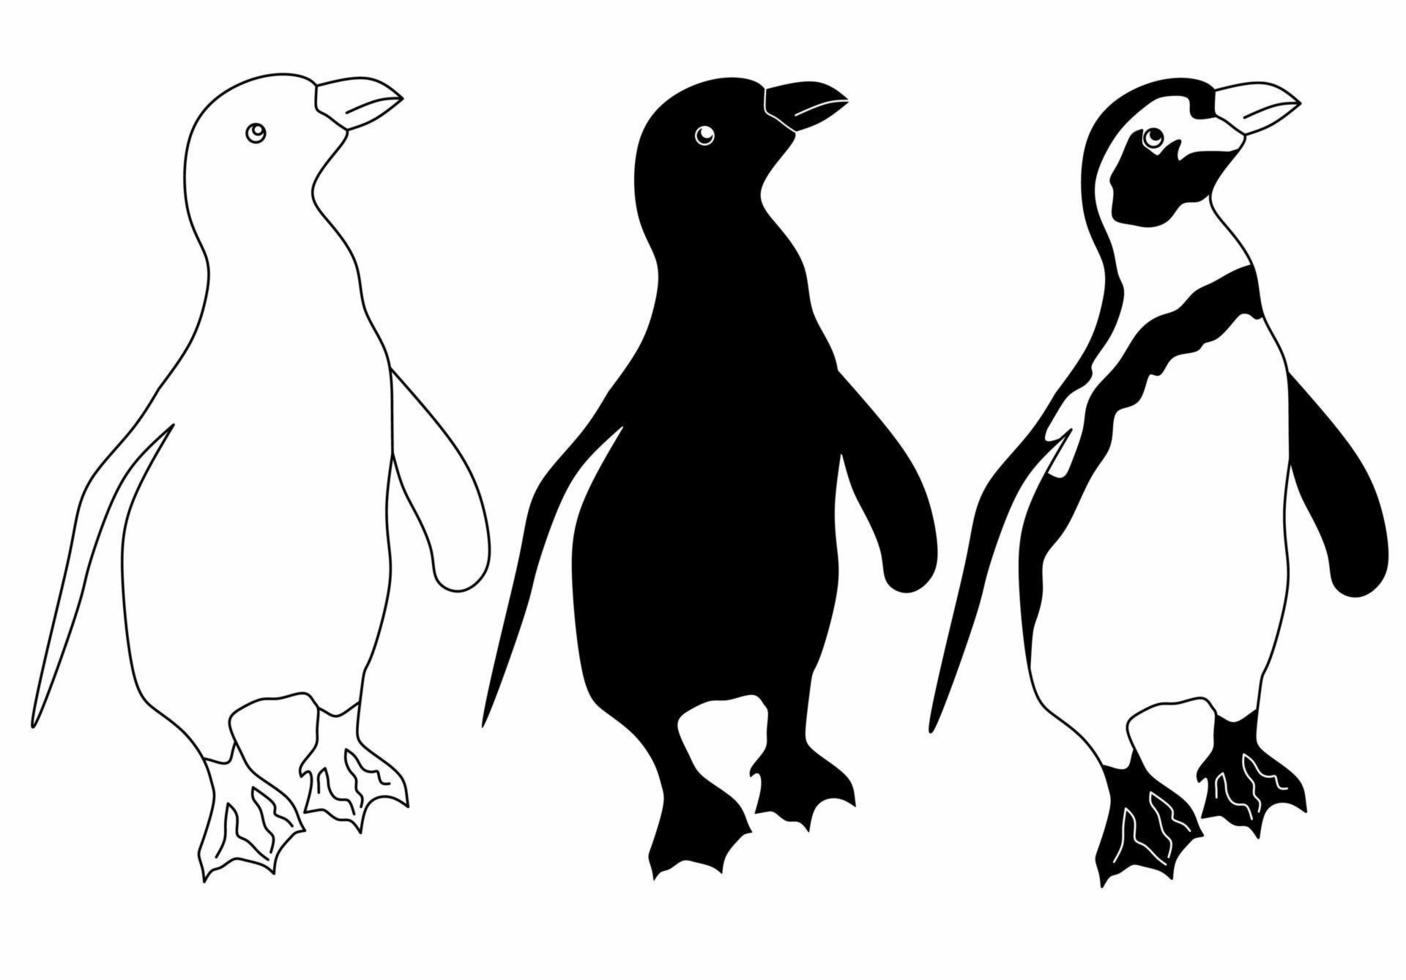 Conjunto de iconos de pingüinos de dibujo a mano alzada aislado sobre fondo blanco. vector